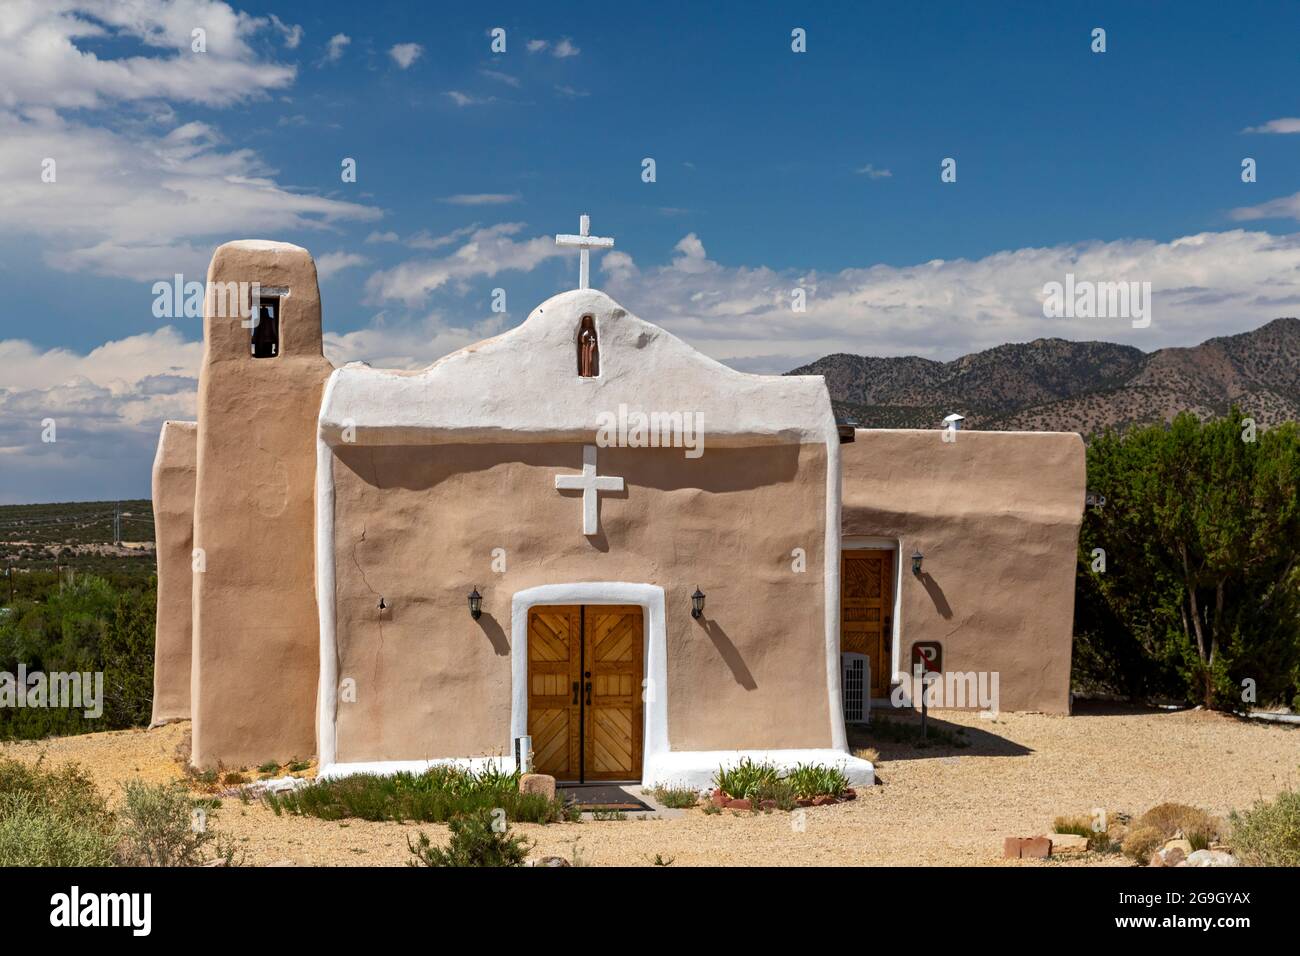 Golden, New Mexico - Katholische Kirche von San Francisco de Asis. Erbaut in den 1830er Jahren, nachdem Gold in der Gegend entdeckt wurde, wurde die Kirche für den Menschen verlassen Stockfoto